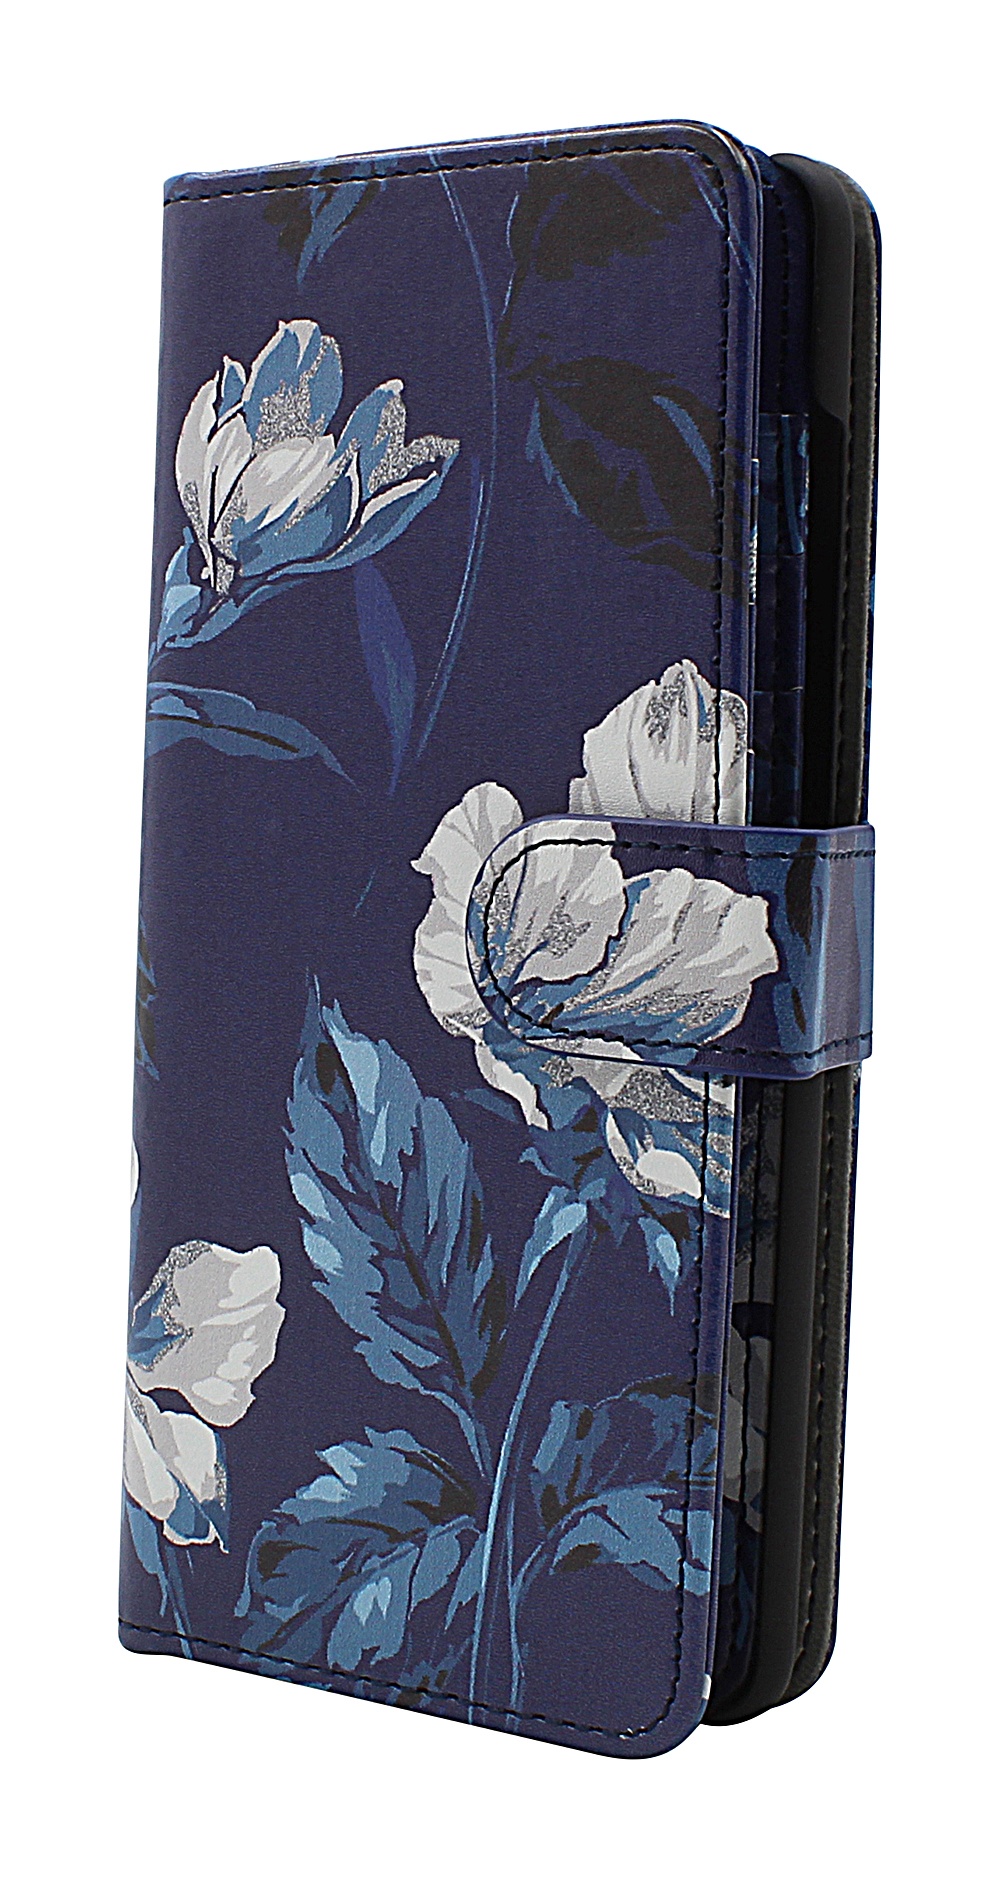 CoverInSkimblocker XL Magnet Designwallet Samsung Galaxy A51 (A515F/DS)